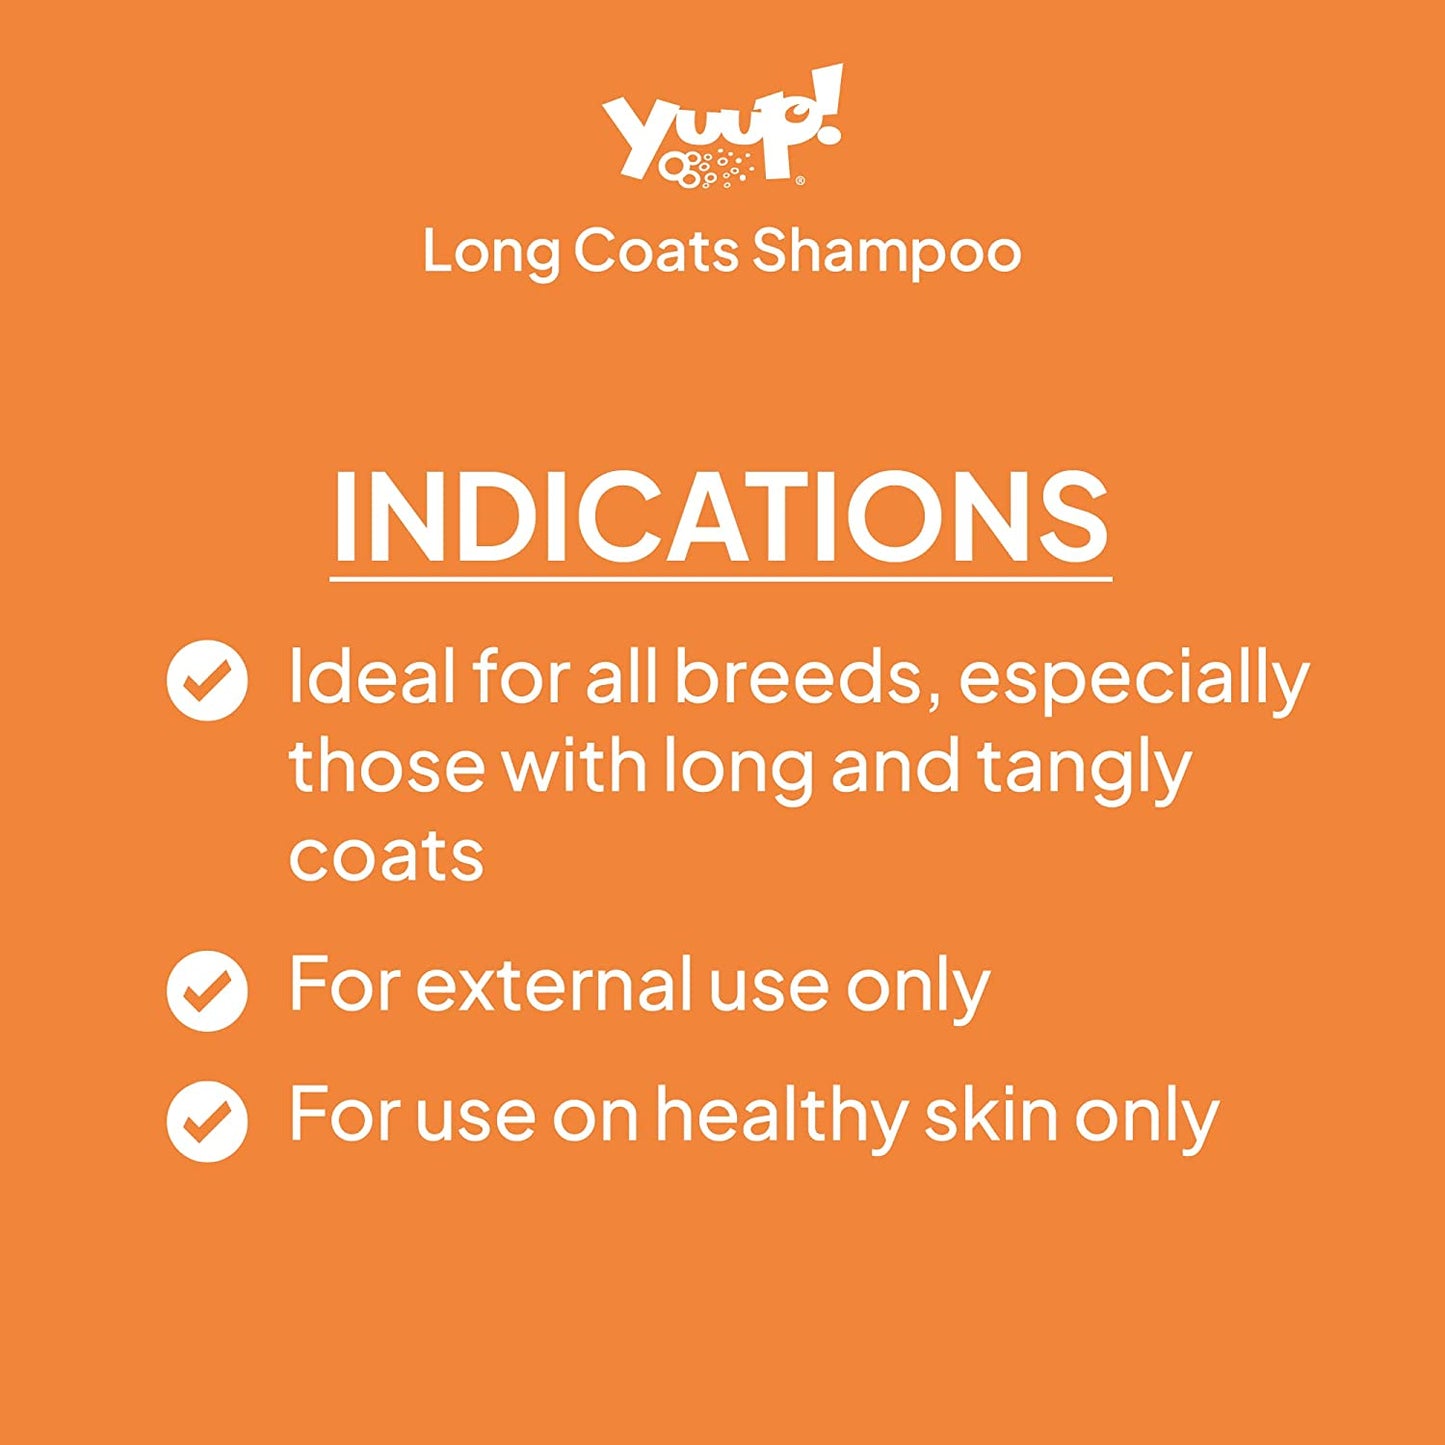 Long coats shampoo